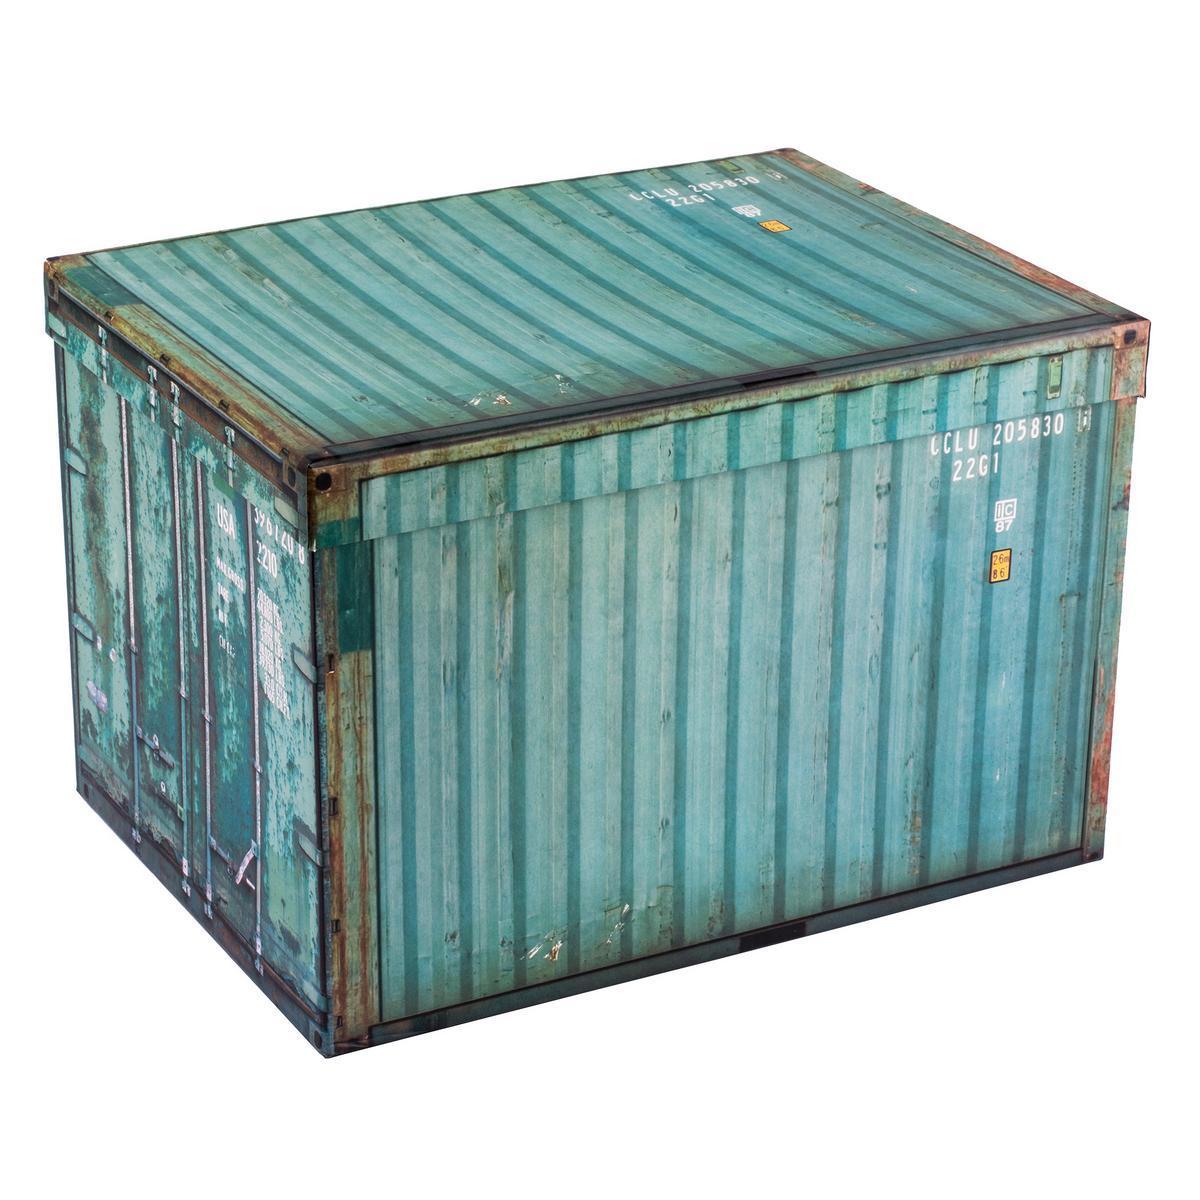 Boîte de rangement style container - Carton - 31,5 x 23,5 x H 21 cm - Vert